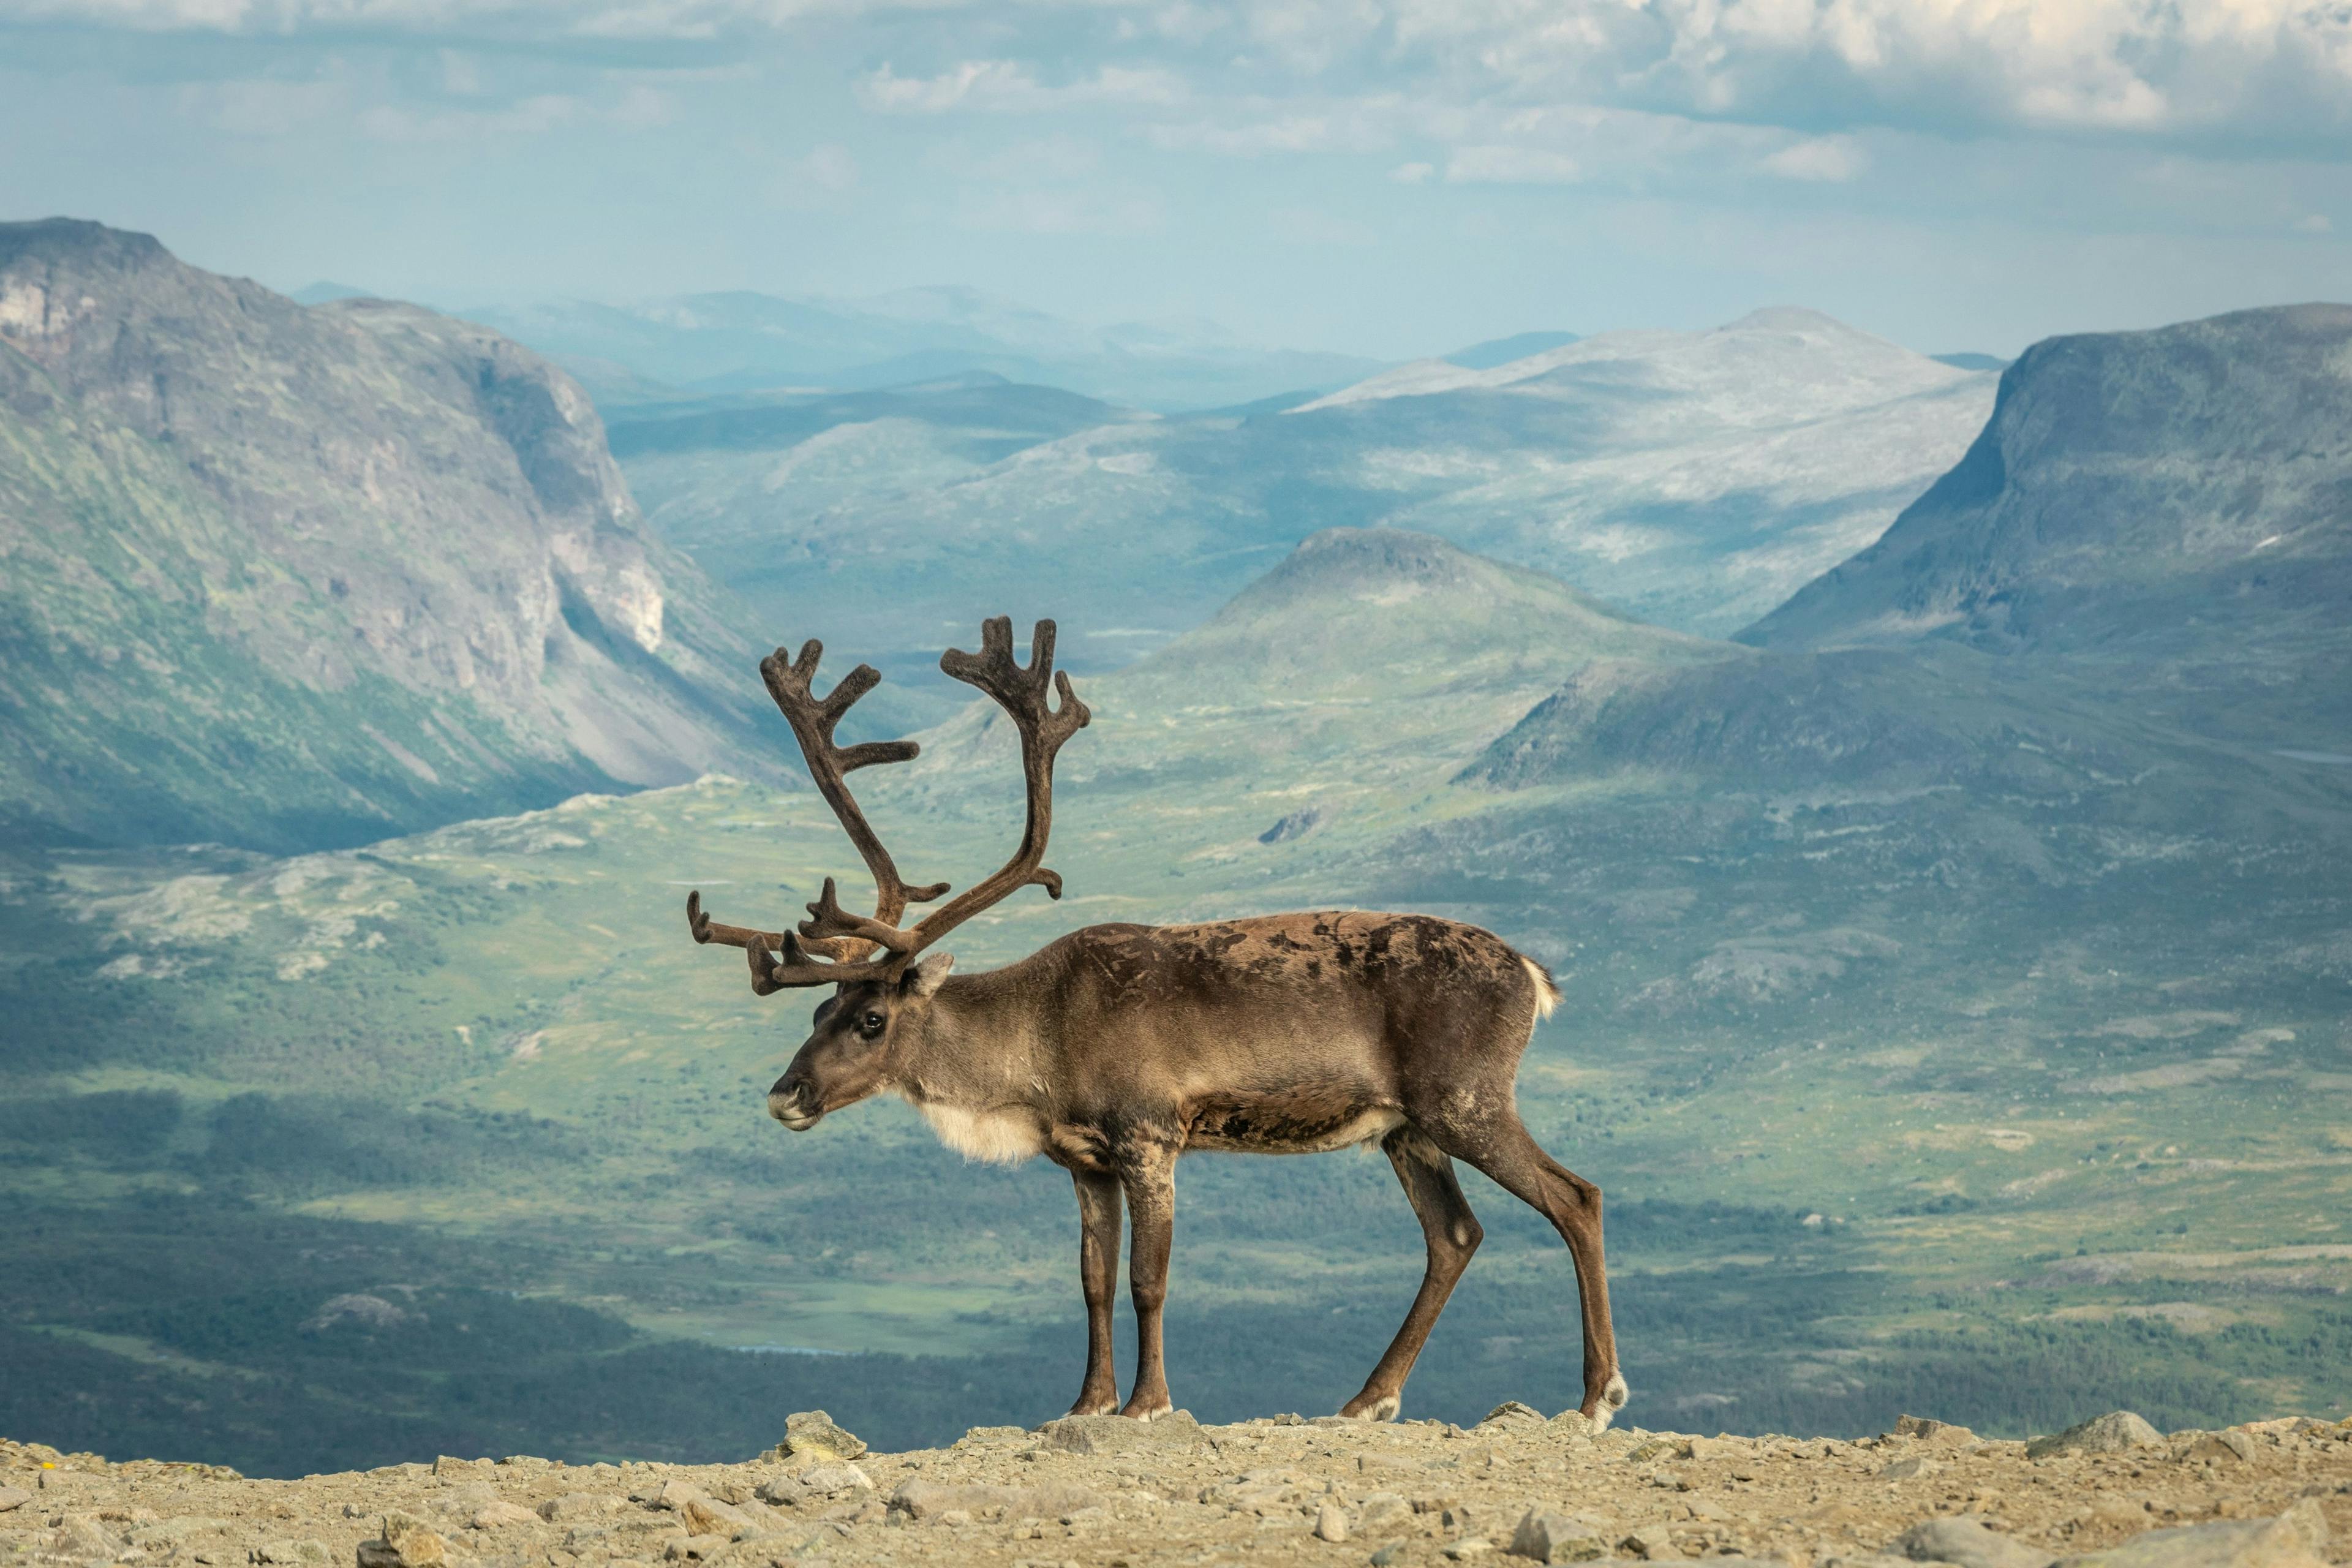 Reindeer in Jotunheimen National Park in Norway.